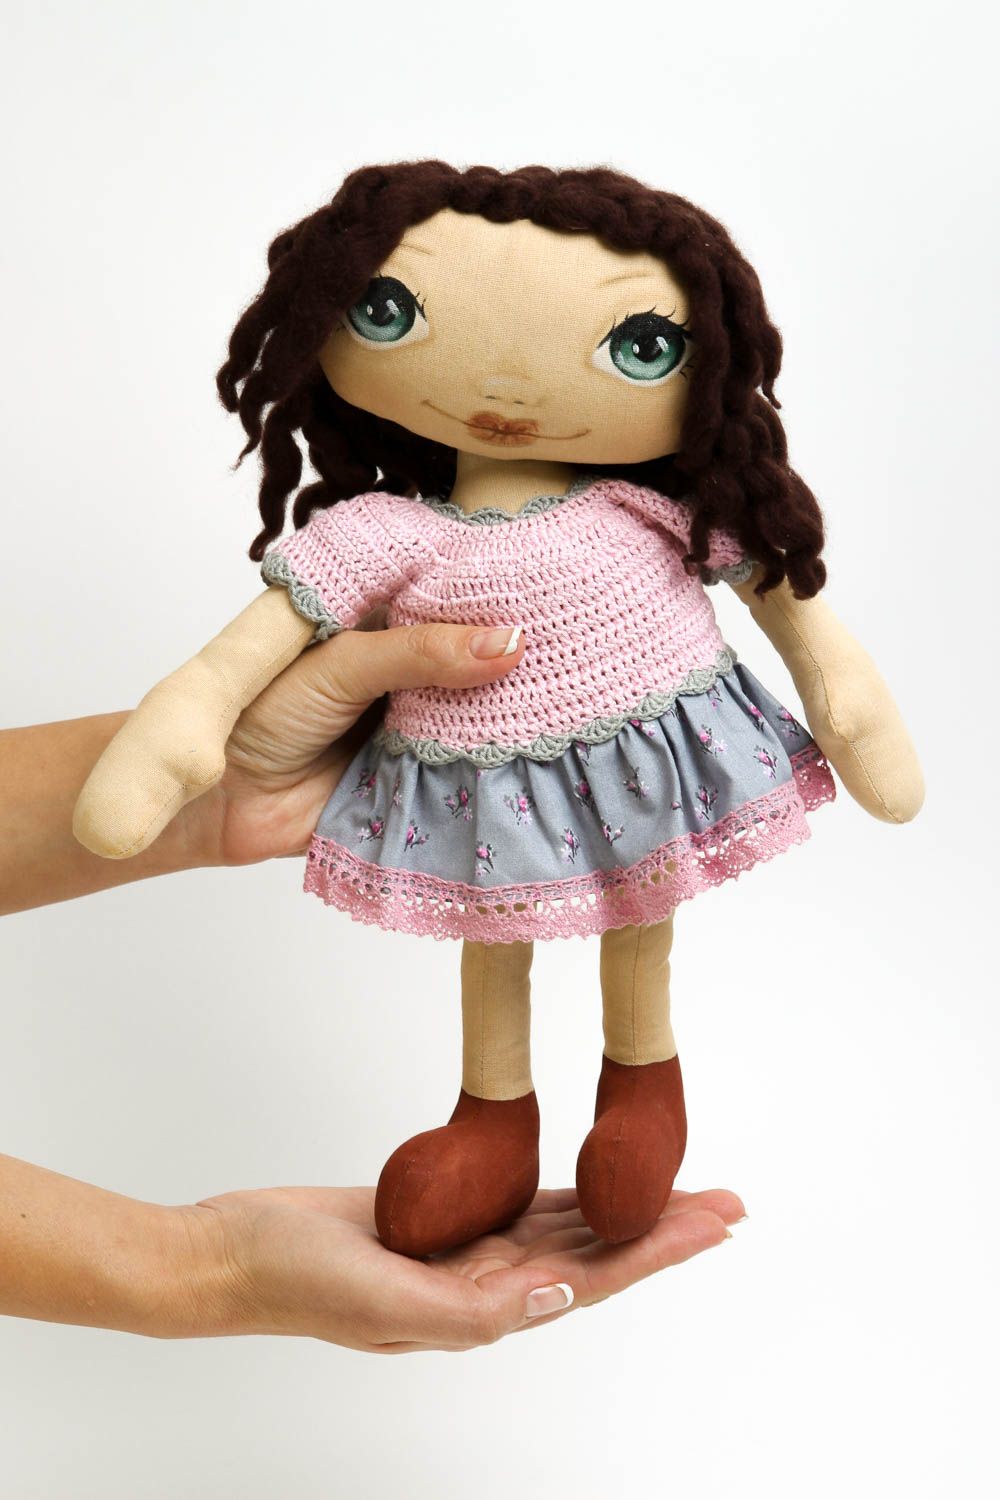 Puppe handgemacht Design Puppe ausgefallenes Spielzeug Geschenk Idee aus Stoff foto 5